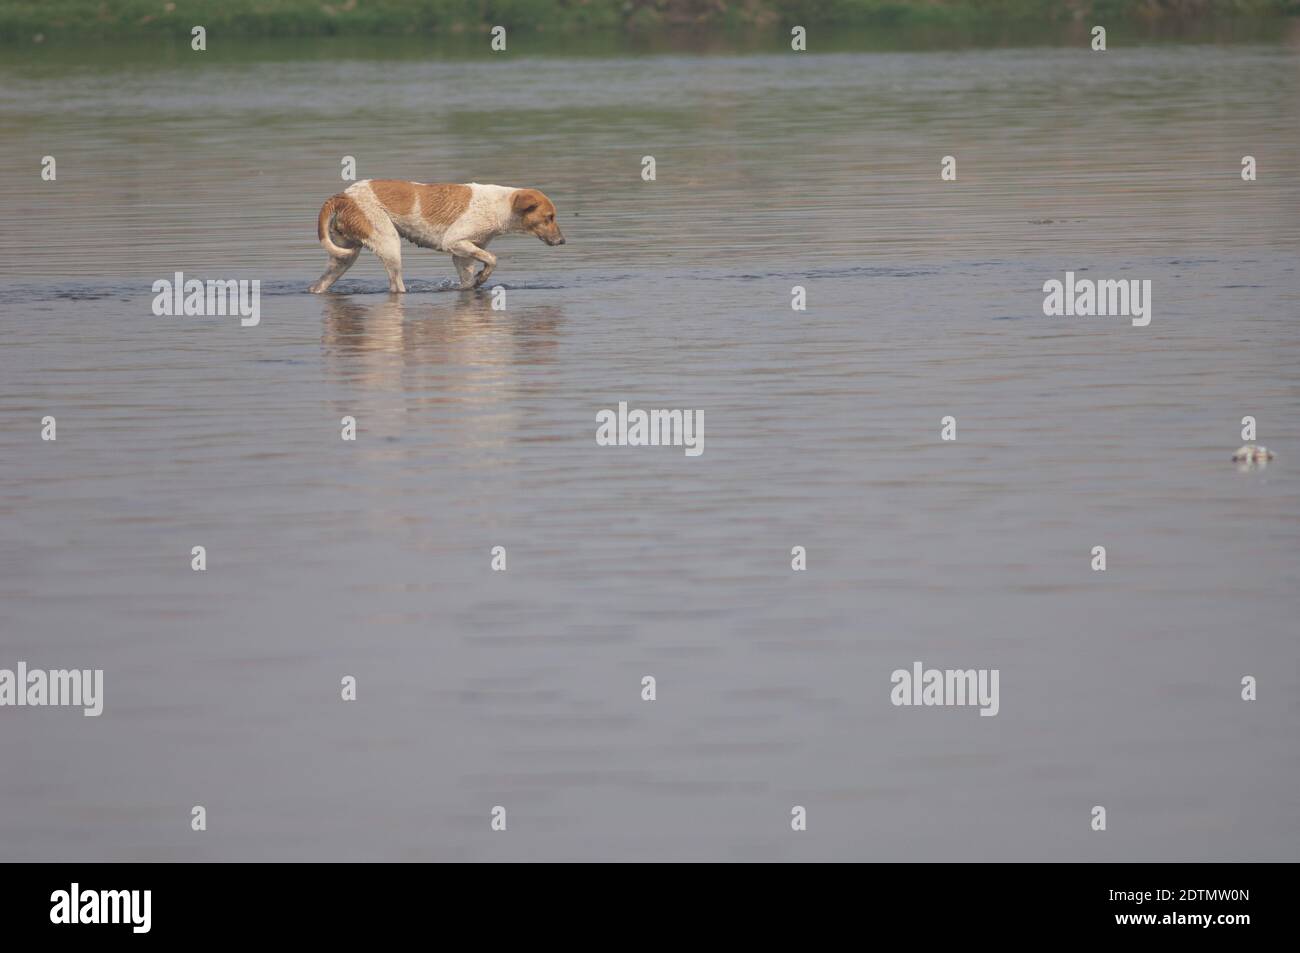 Cane selvaggio Canis lupus familiaris che cammina nel fiume Yamuna. Agra. Utttar Pradesh. India. Foto Stock